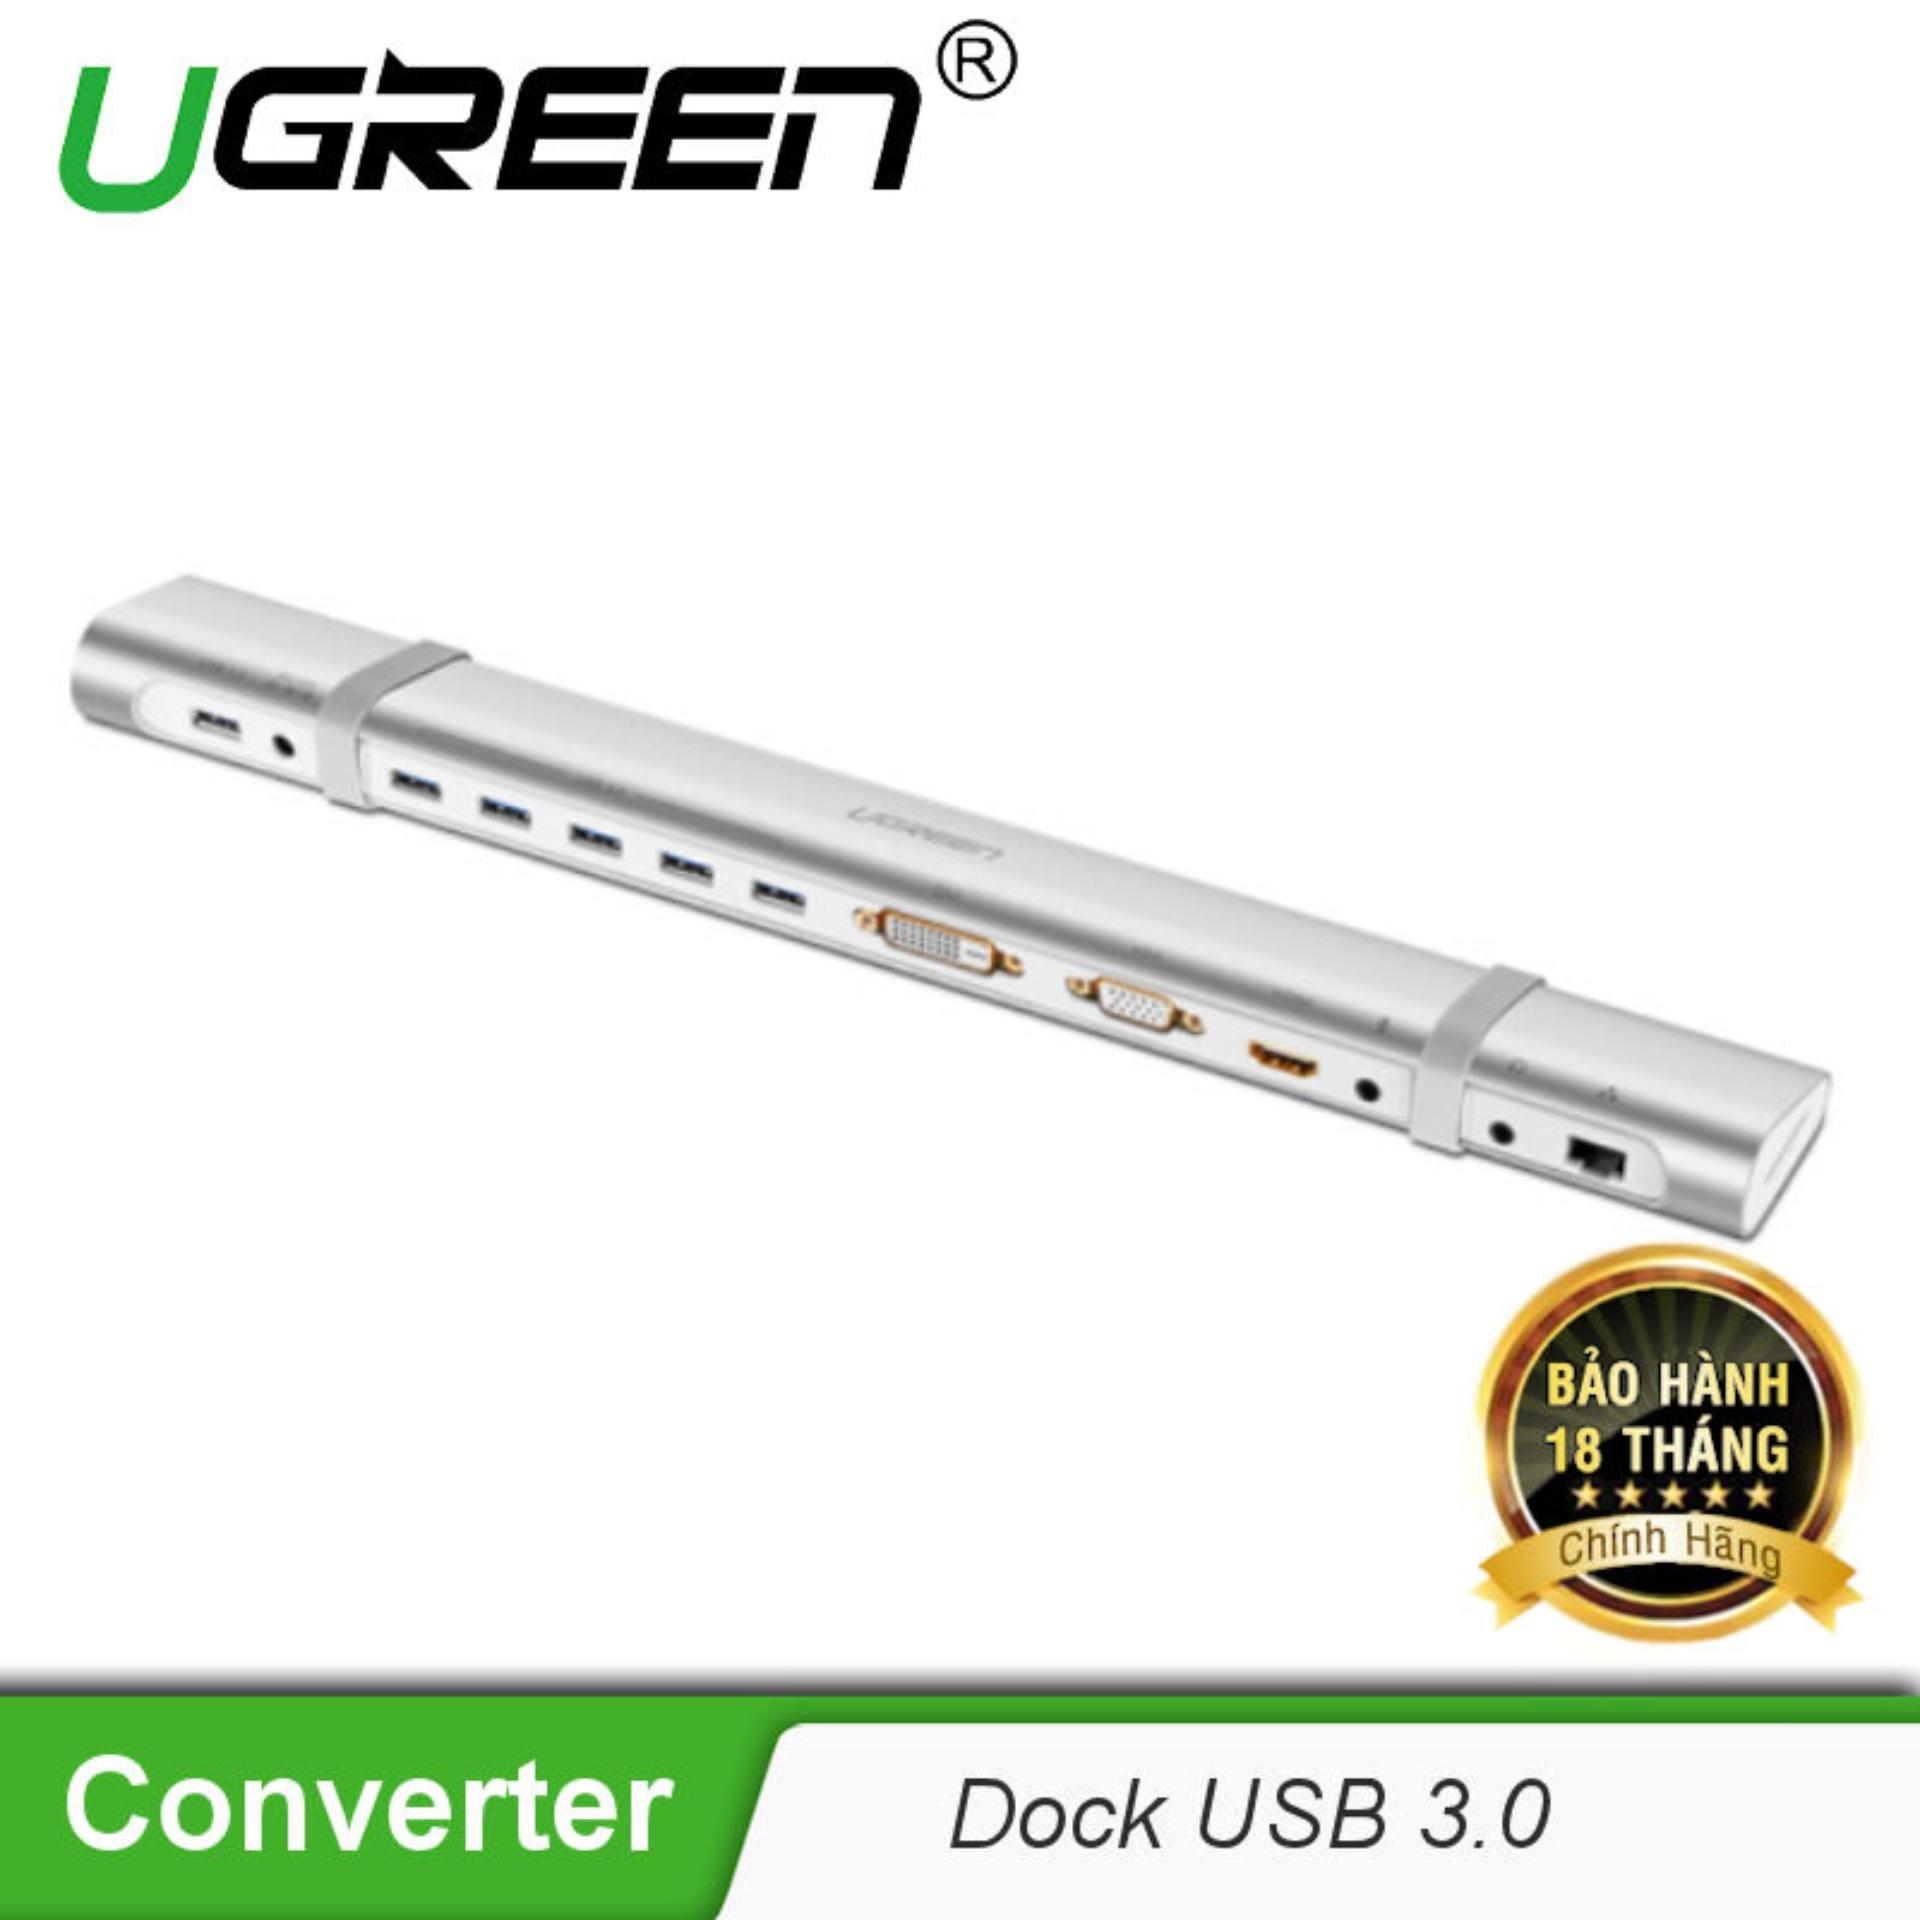 Dock USB 3.0 đa năng vỏ nhôm cao cấp UGREEN 40258